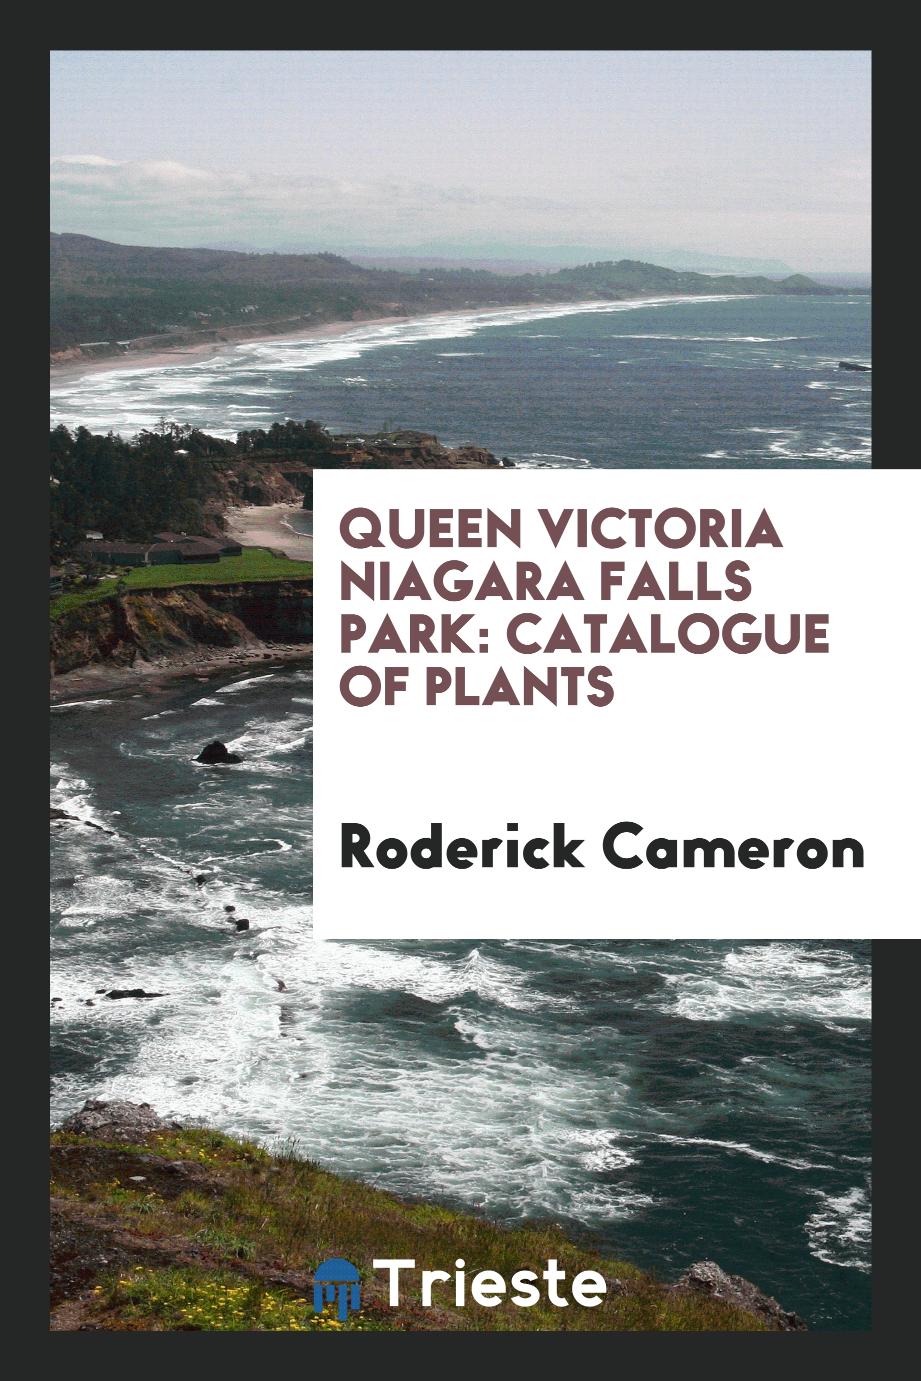 Queen Victoria Niagara Falls park: catalogue of plants